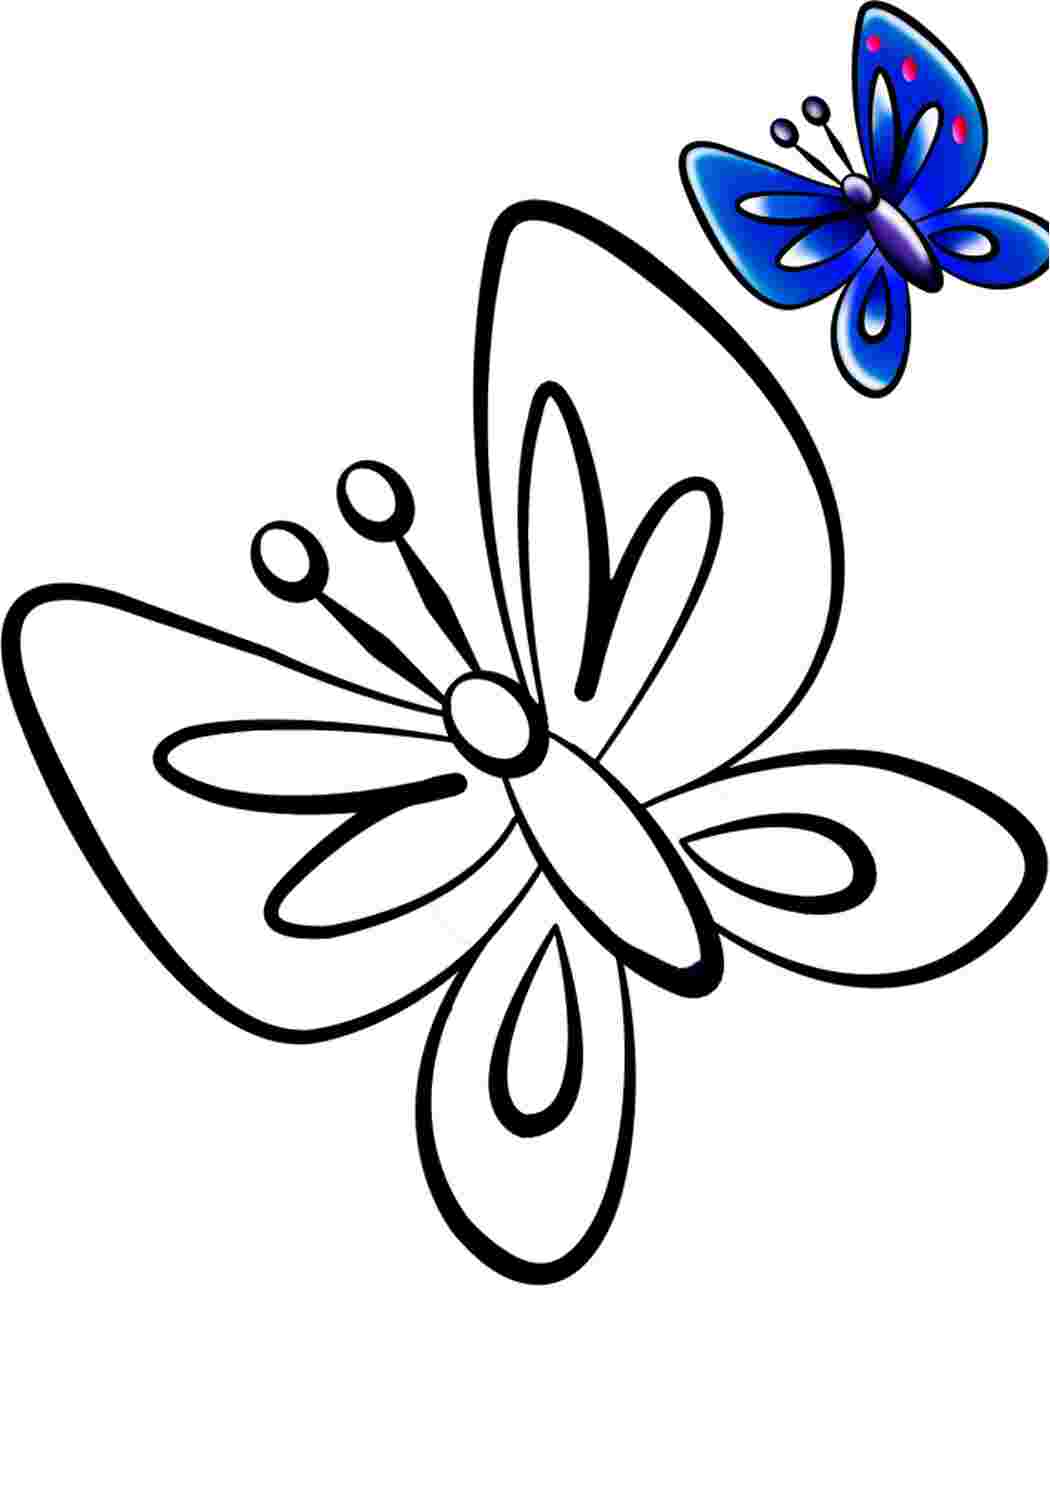 Бабочки для детей 2 3 лет. Бабочка раскраска для детей. Бабочка для раскрашивания для детей. Бабочка раскраска для малышей. Детская раскраска бабочка.